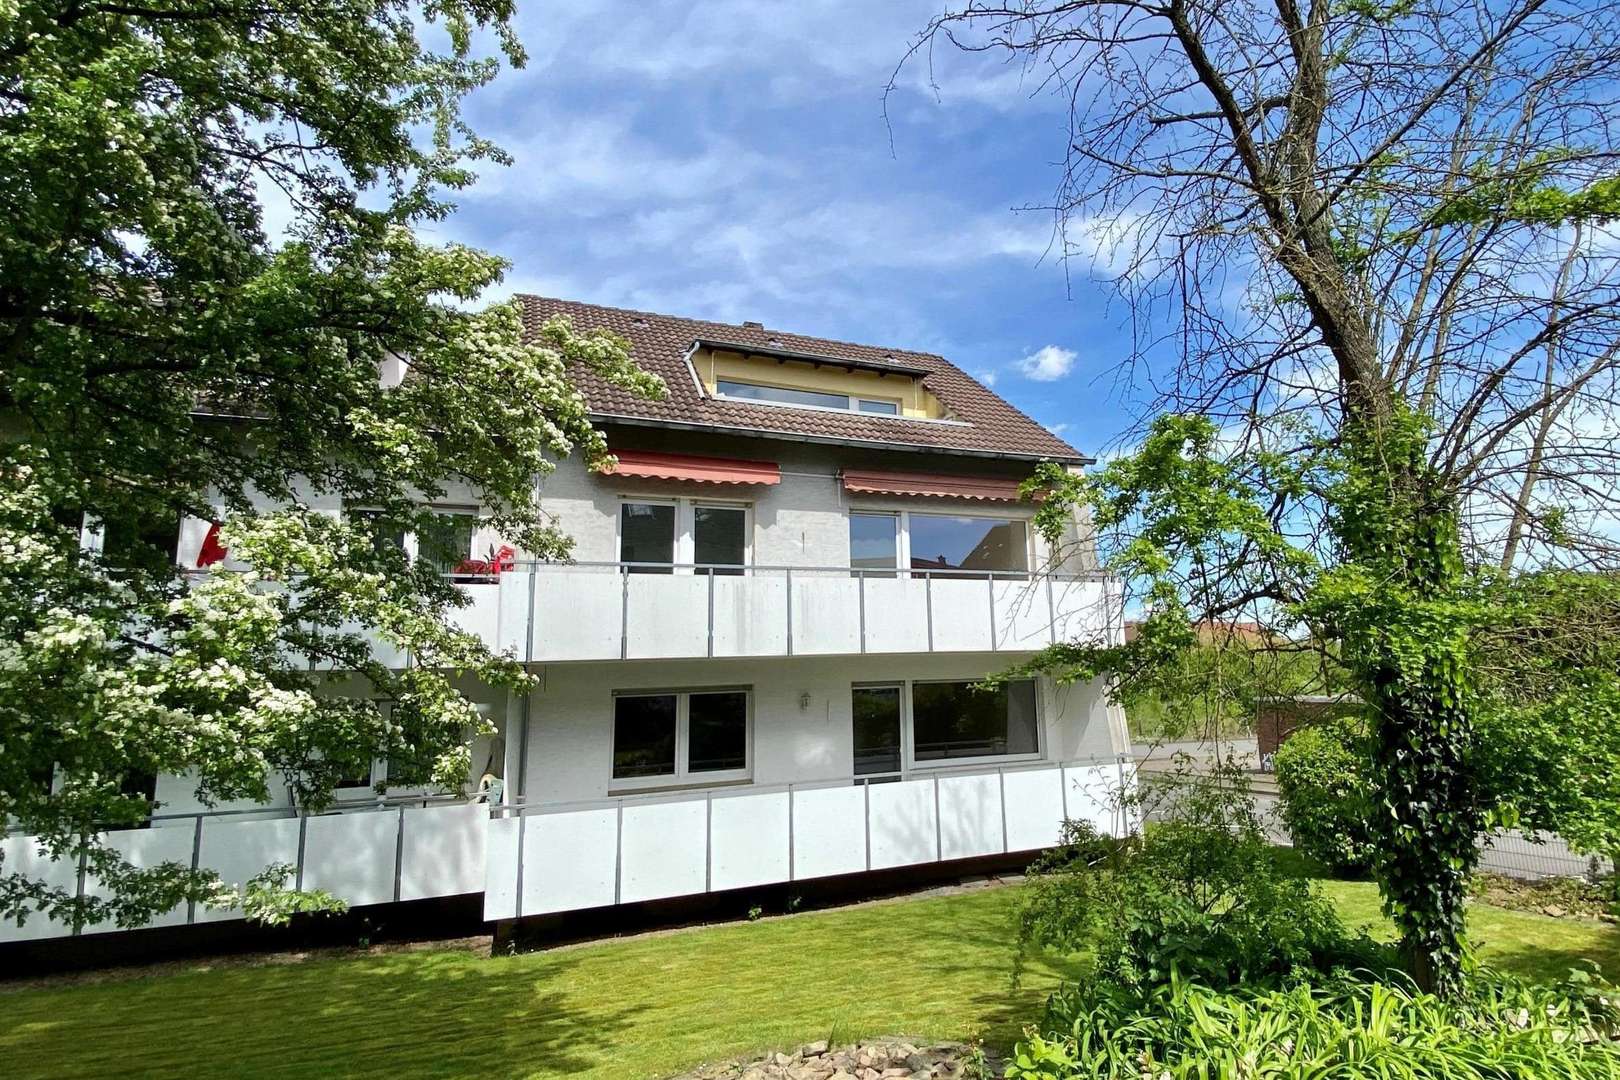 Außen2 - Etagenwohnung in 32545 Bad Oeynhausen mit 72m² kaufen